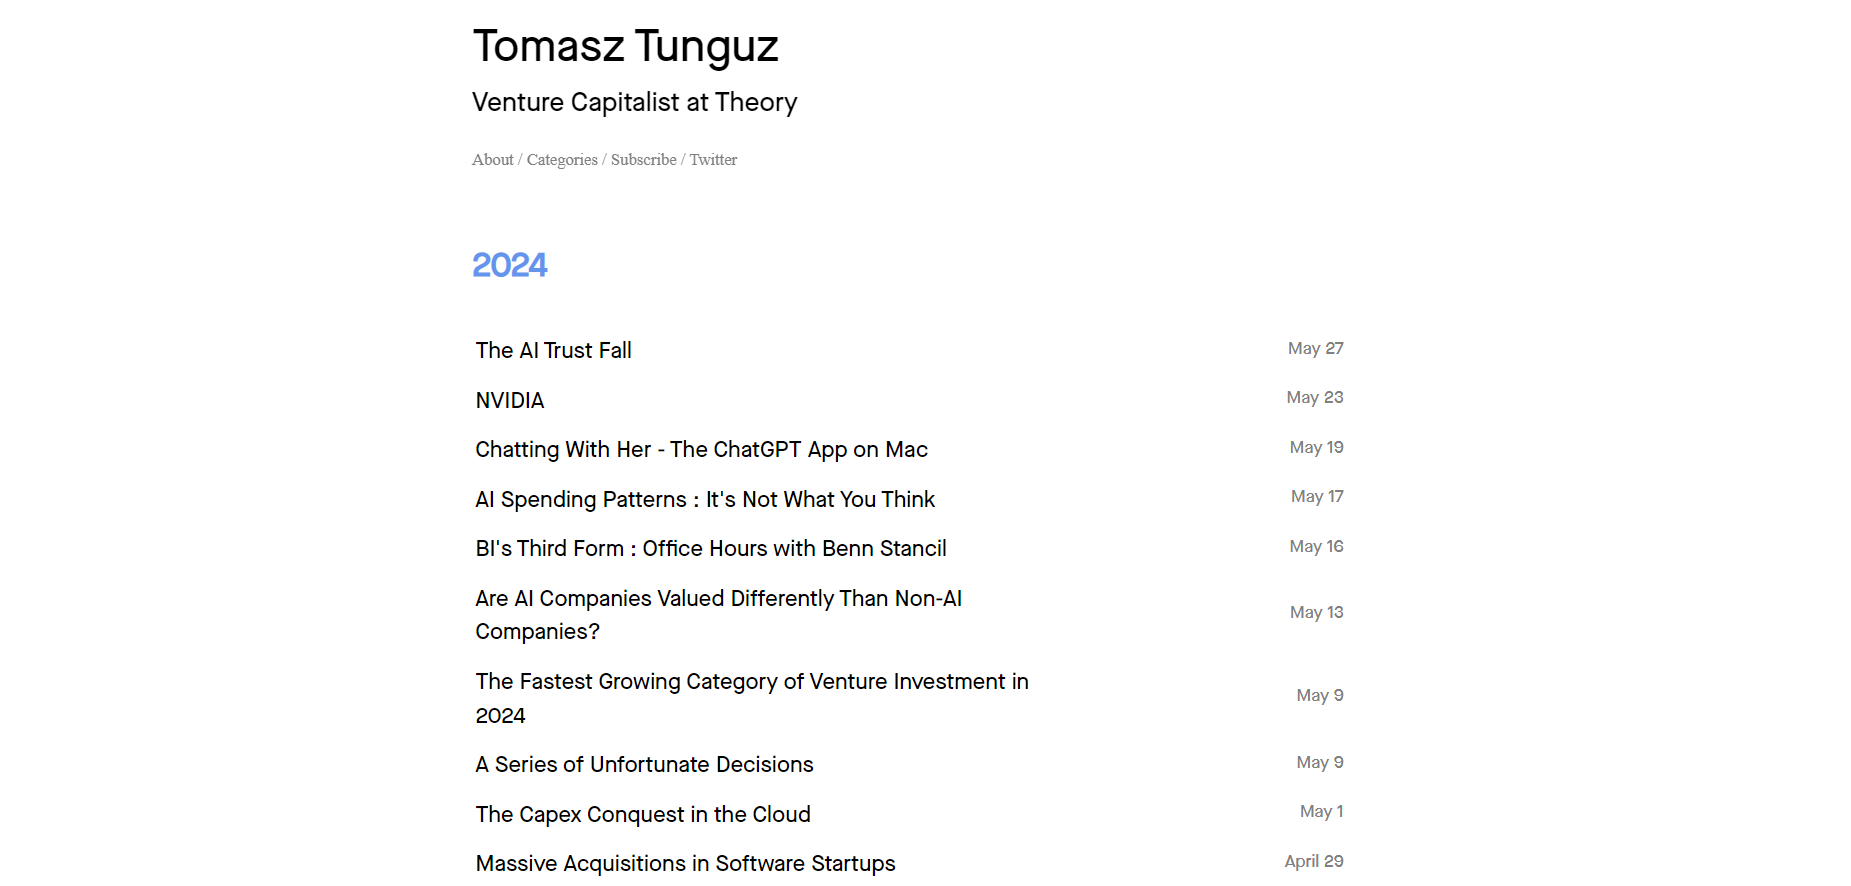 Tomasz Tunguz’s Blog